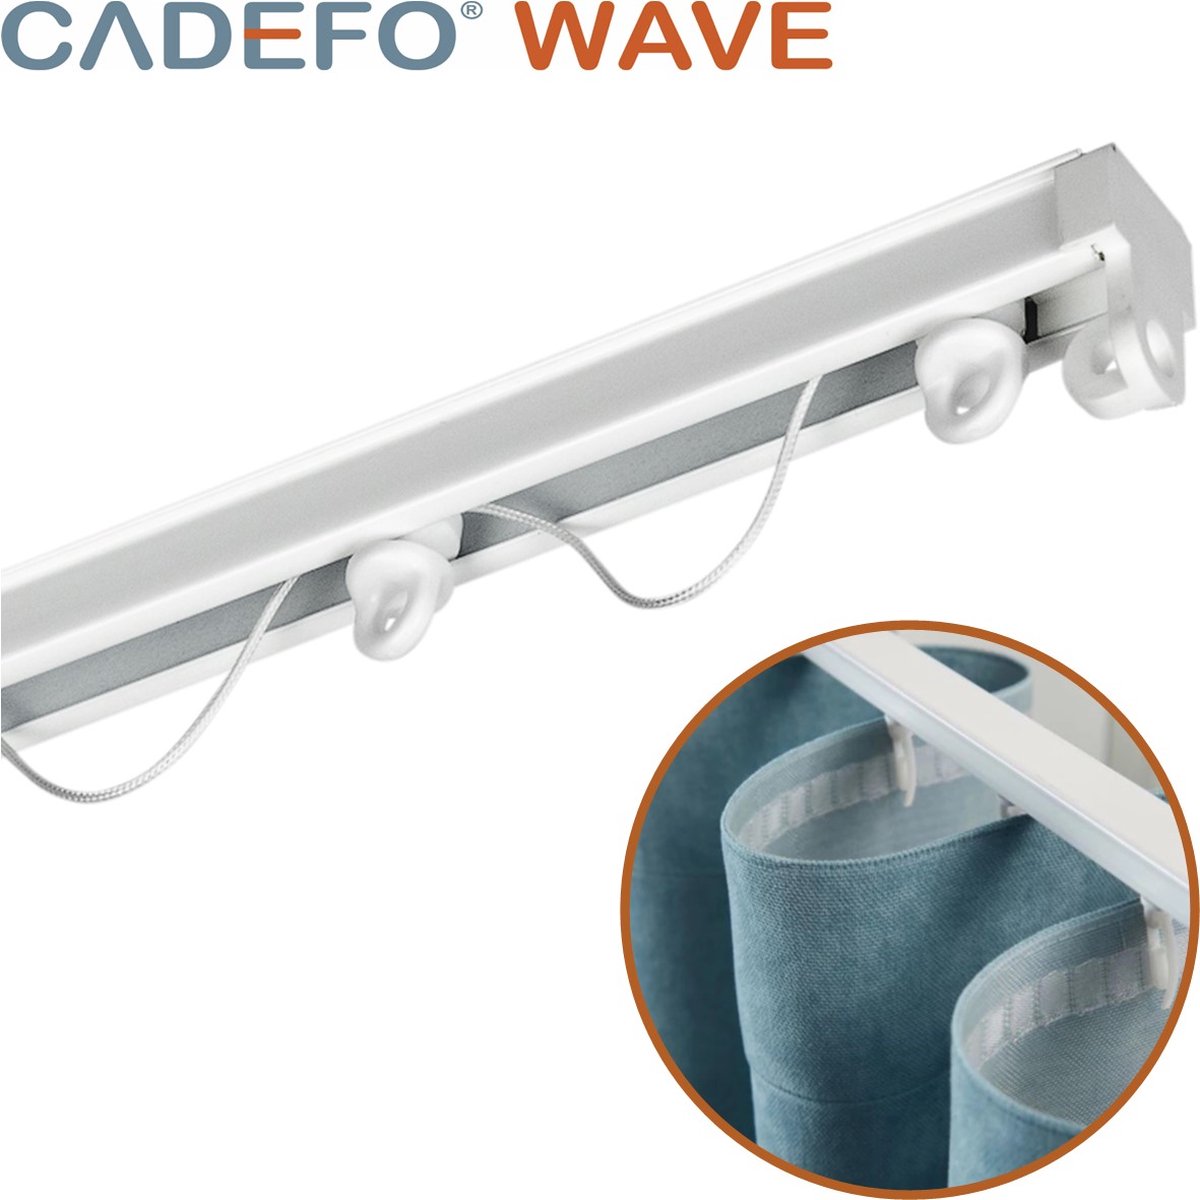 CADEFO WAVE (251 - 300 cm) Gordijnrails - Compleet op maat! - UIT 1 STUK - Leverbaar tot 6 meter - Plafondbevestiging - Lengte 292 cm